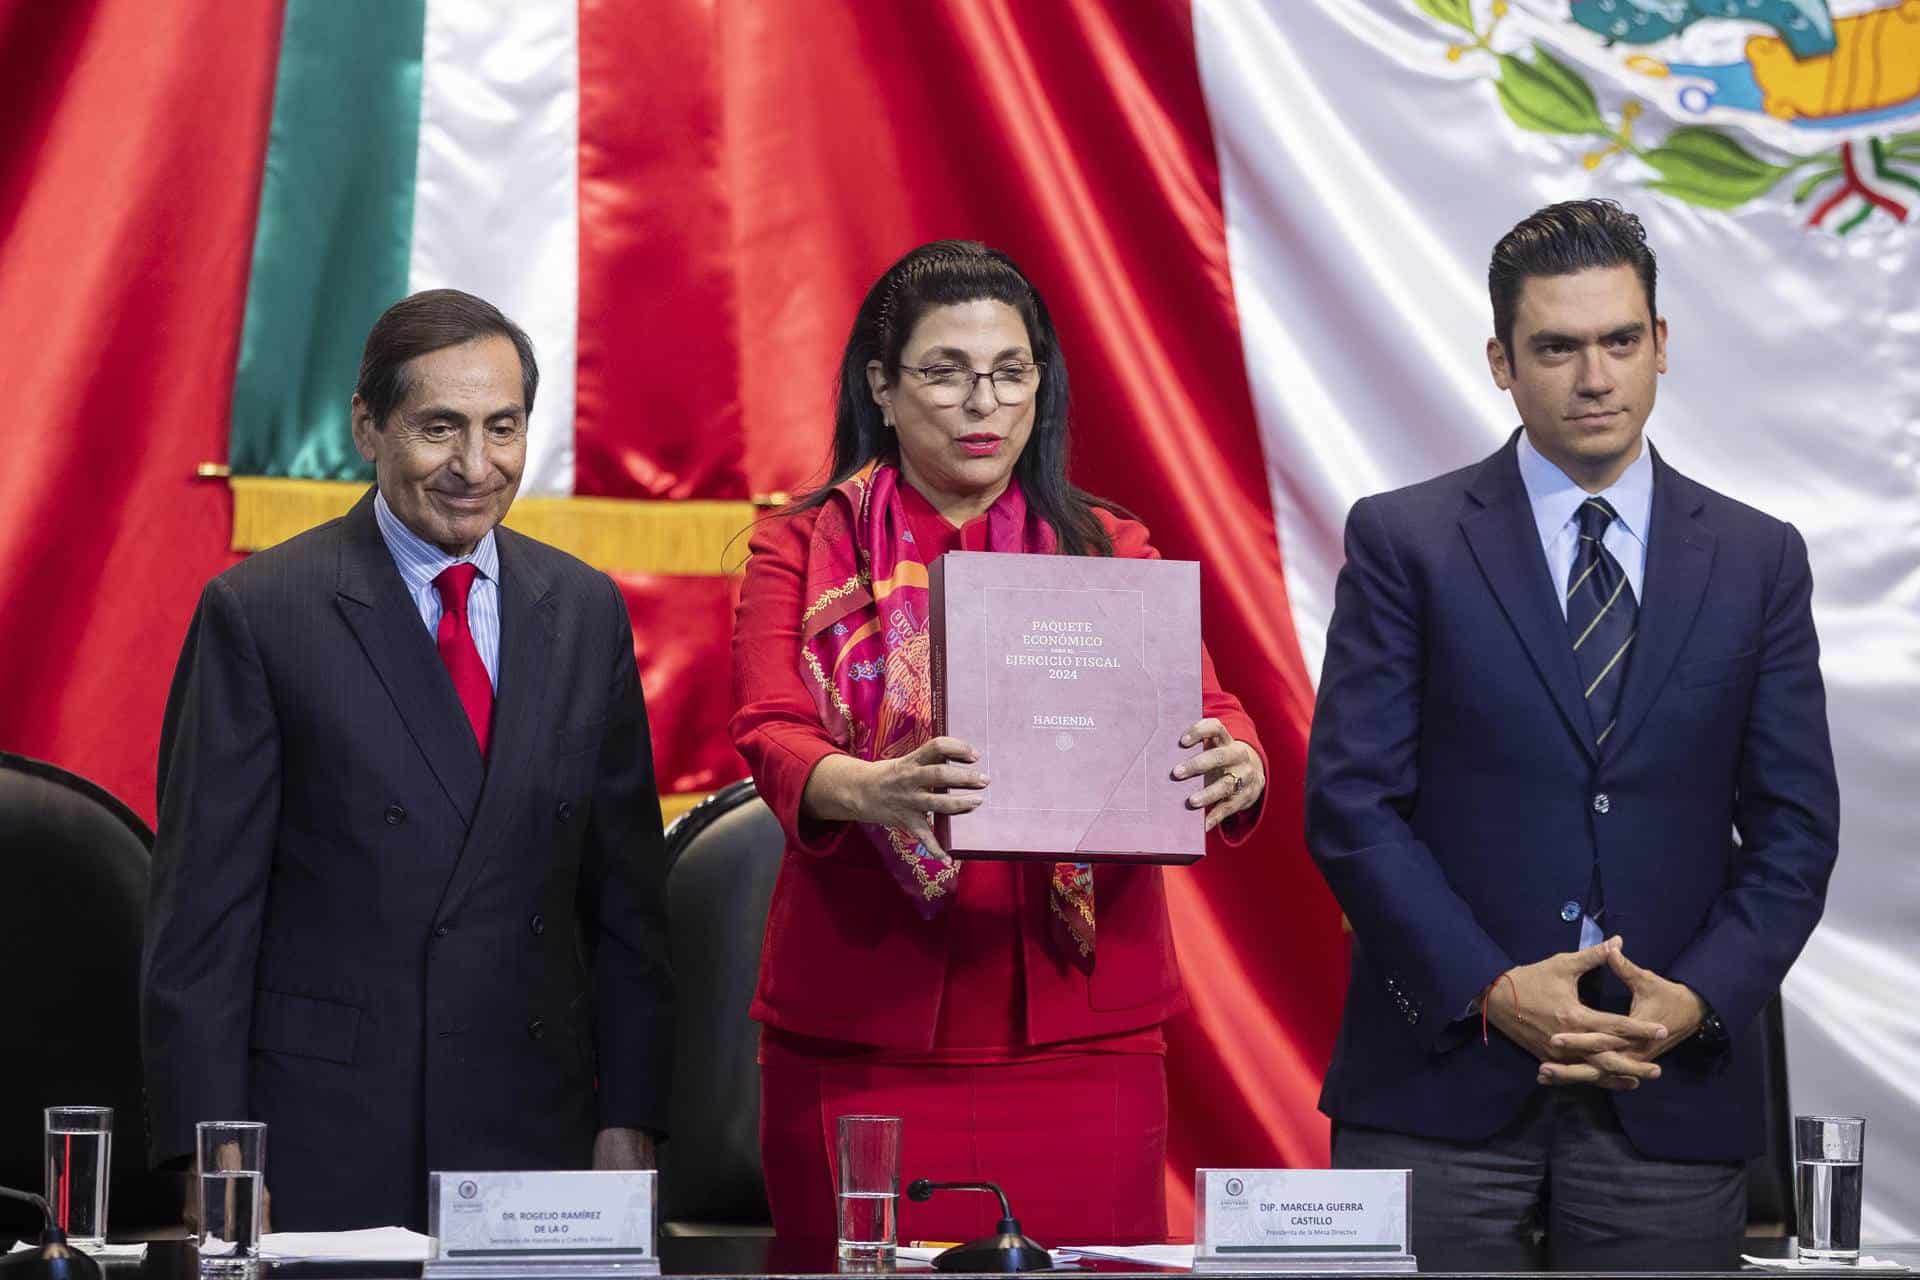 México enfrentará presiones en finanzas públicas en próximos años si no aplica cambios fiscales, expertos